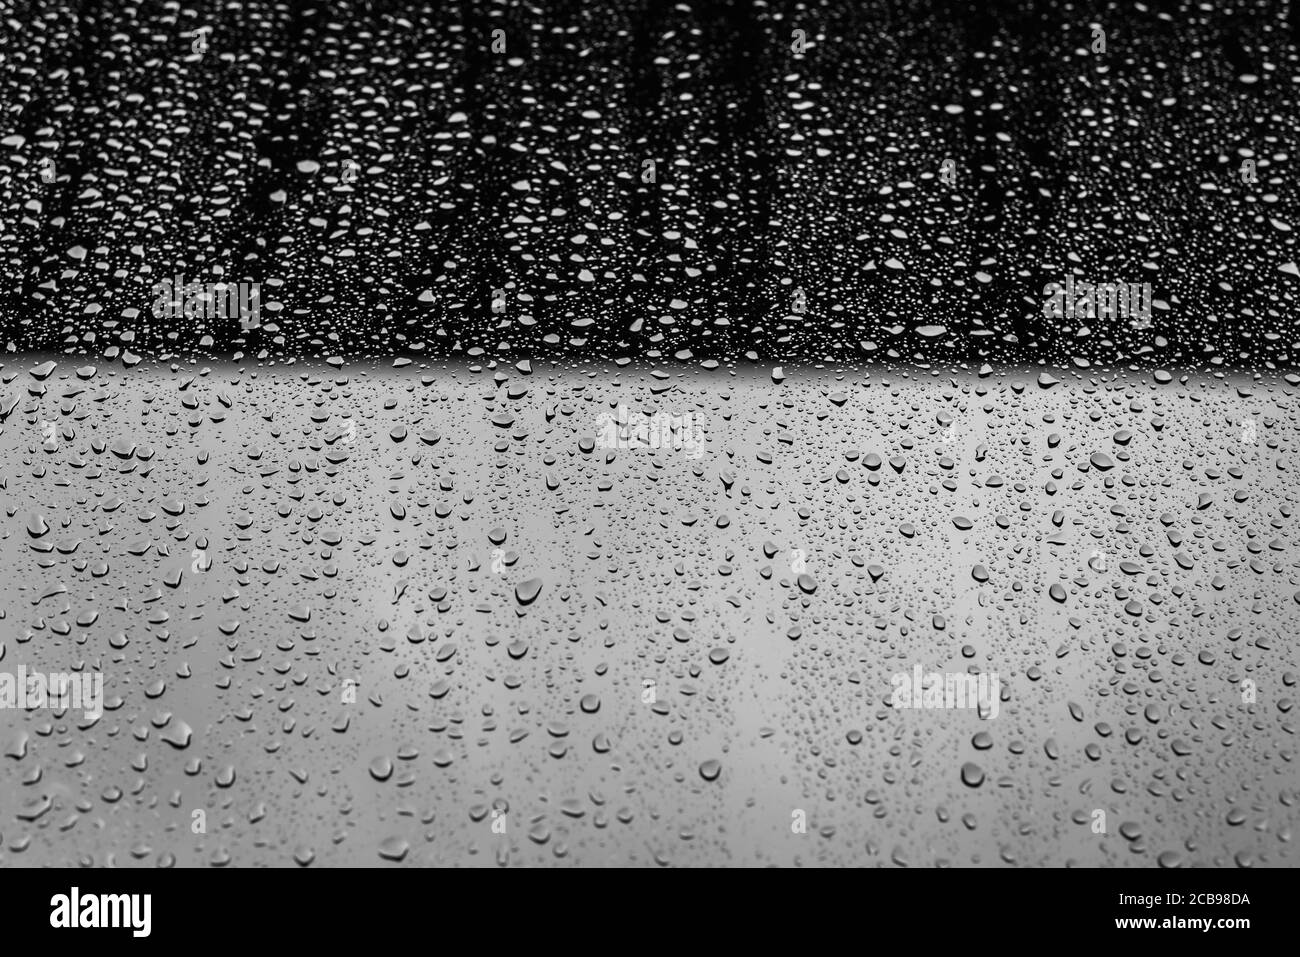 Regentropfen am Fenster vor verschwommener Kulisse während des Sturms Ciara, Februar 2020, London. Stockfoto